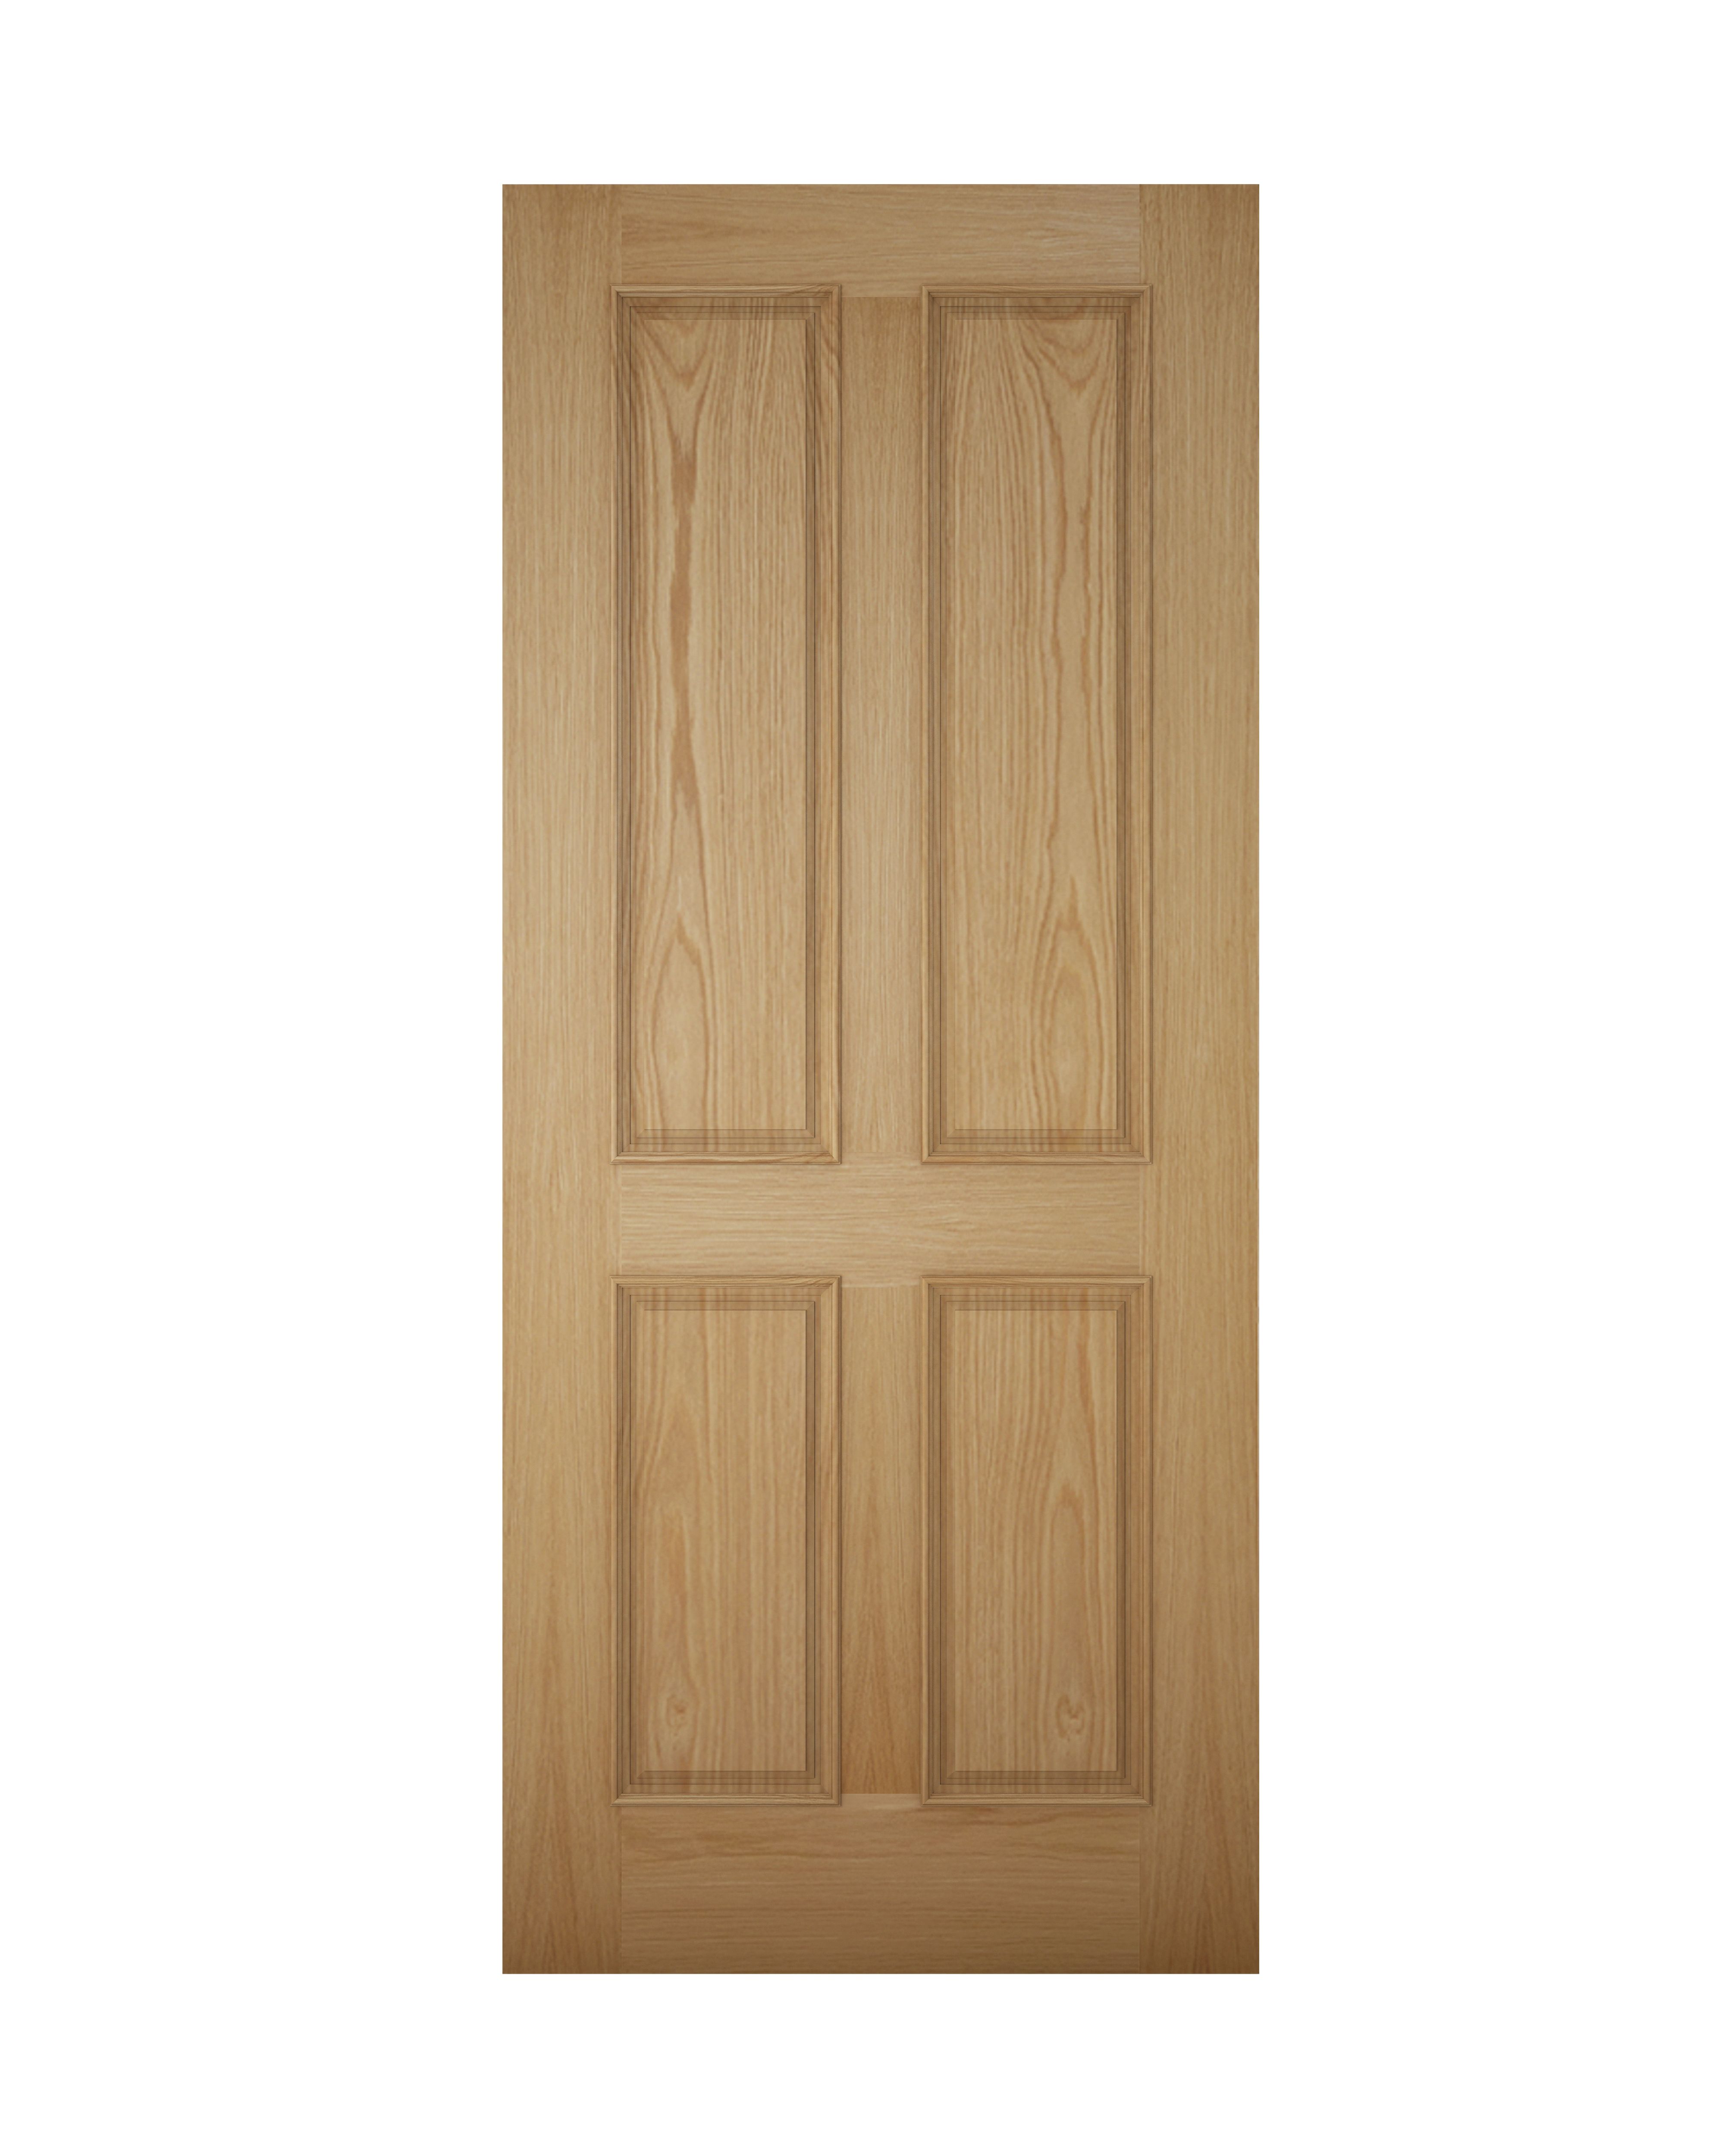 4 panel White oak veneer Left & RHed Front door, (H)1981mm (W)838mm